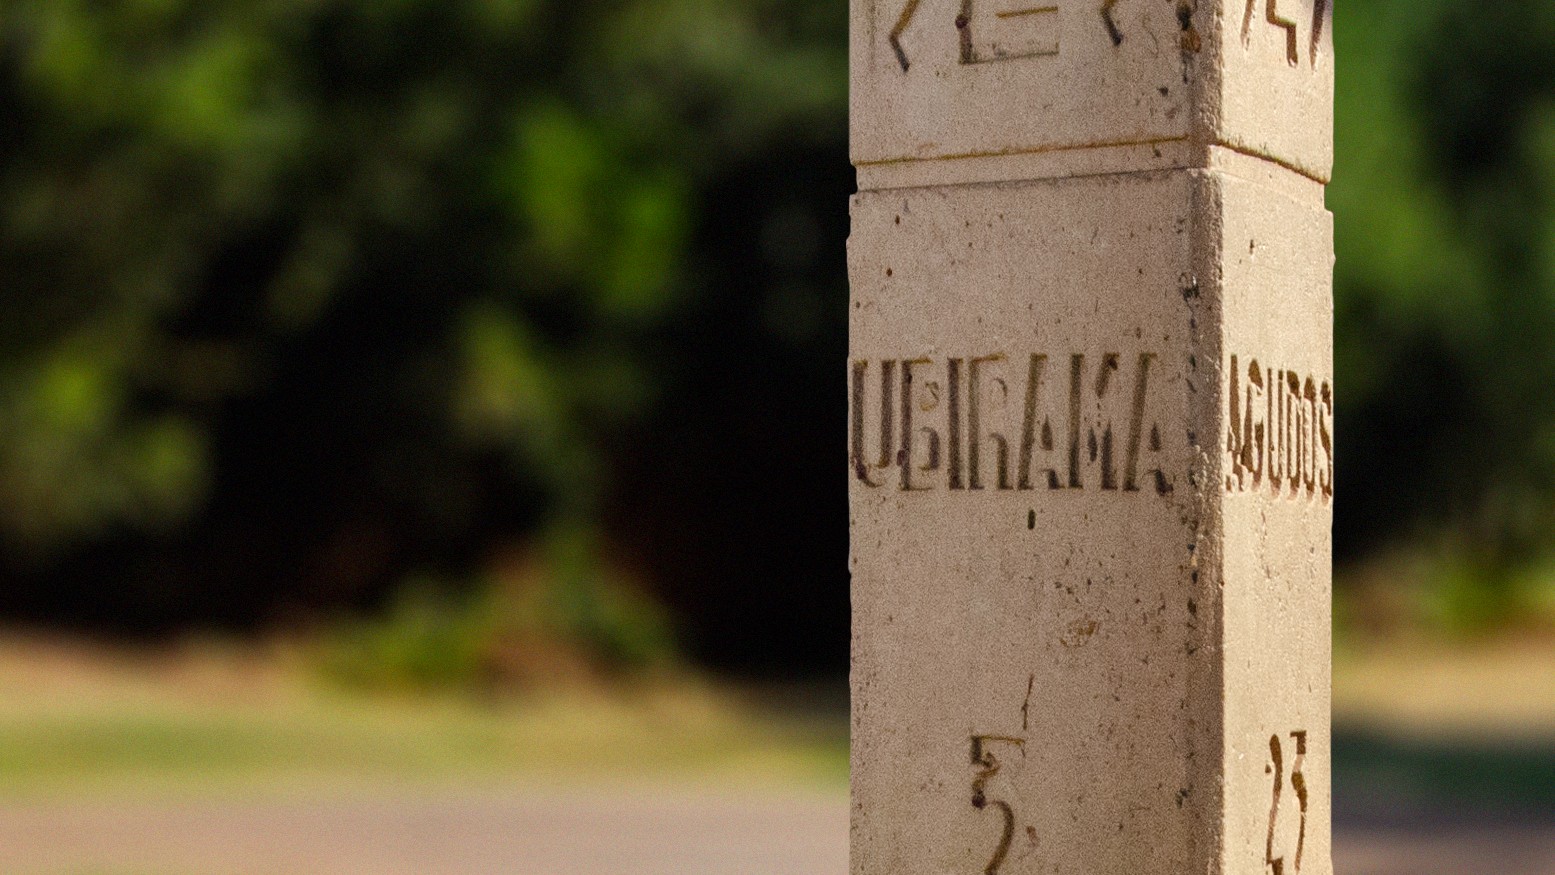 Quando Lençóis Paulista se chamou "Ubirama", e o que isso significa